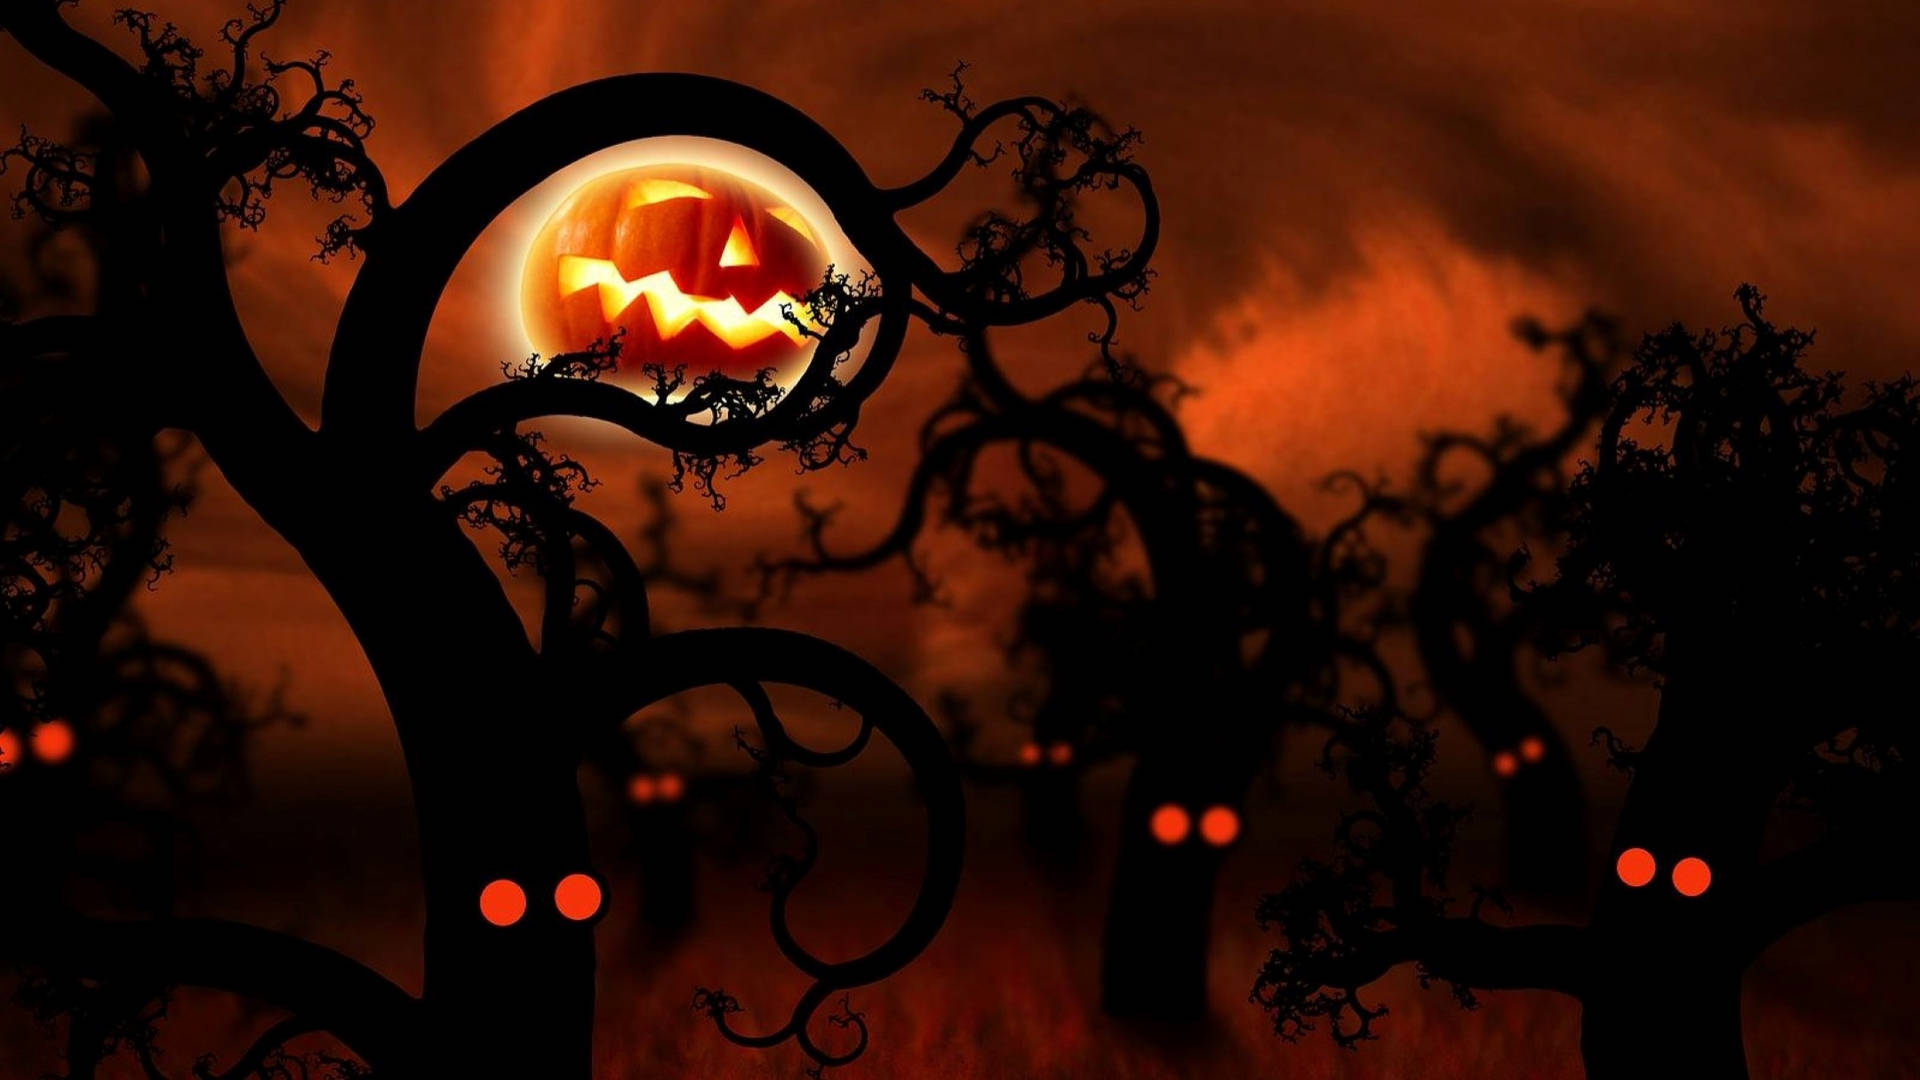 Dark Woods Halloween Aesthetic Art Background